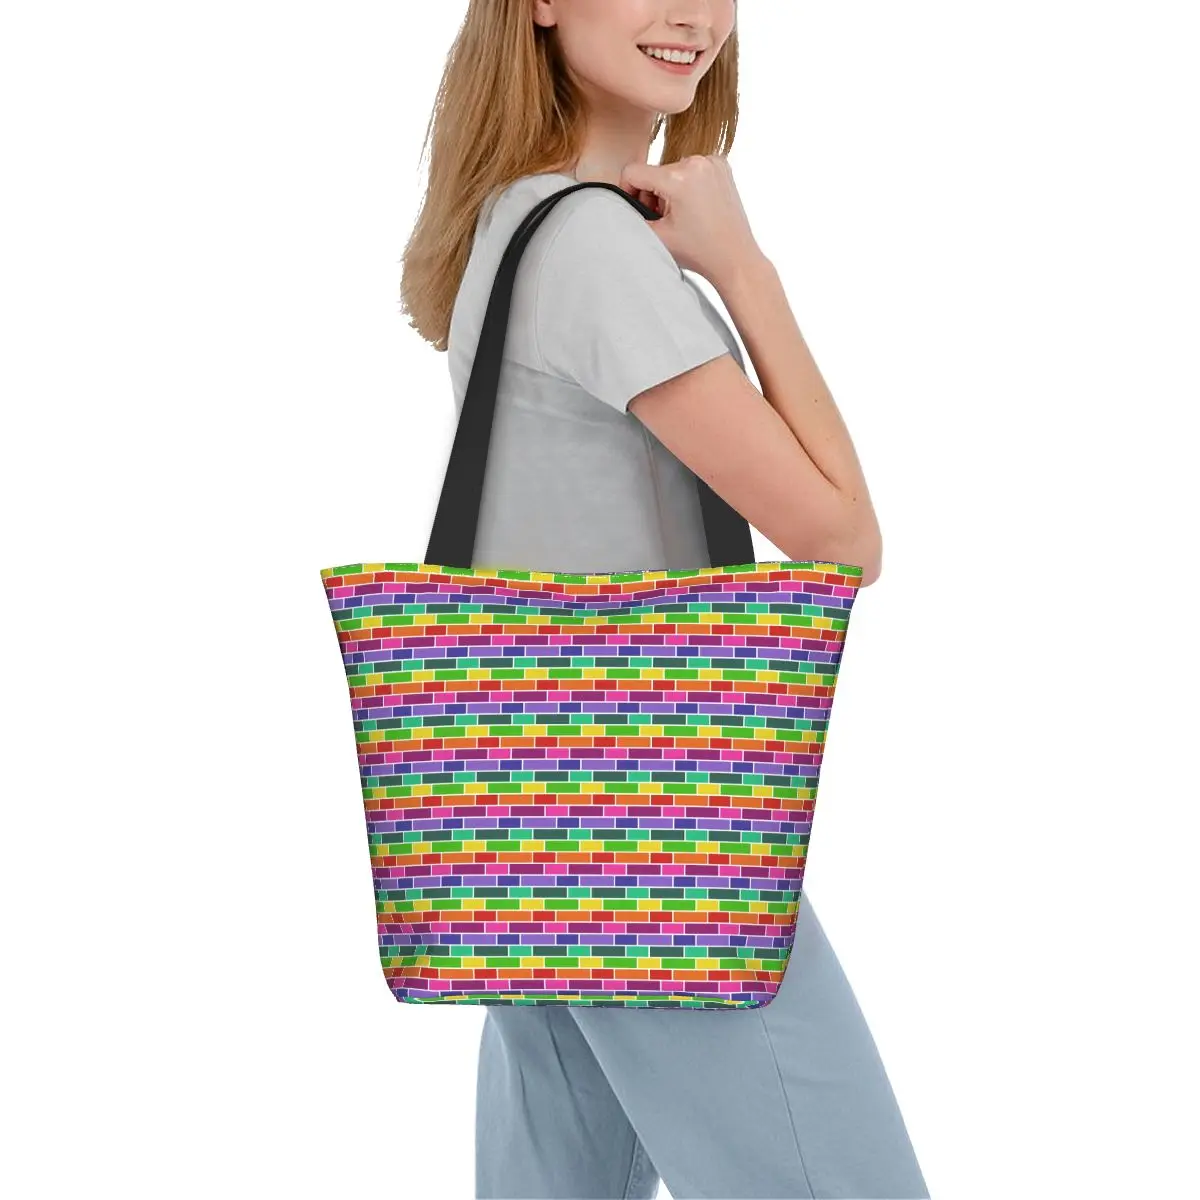 

Сумка-шоппер в стиле ретро с неоновым геометрическим принтом, уличные сумки, женские сумки для покупок с принтом, забавная тканевая сумка-тоут